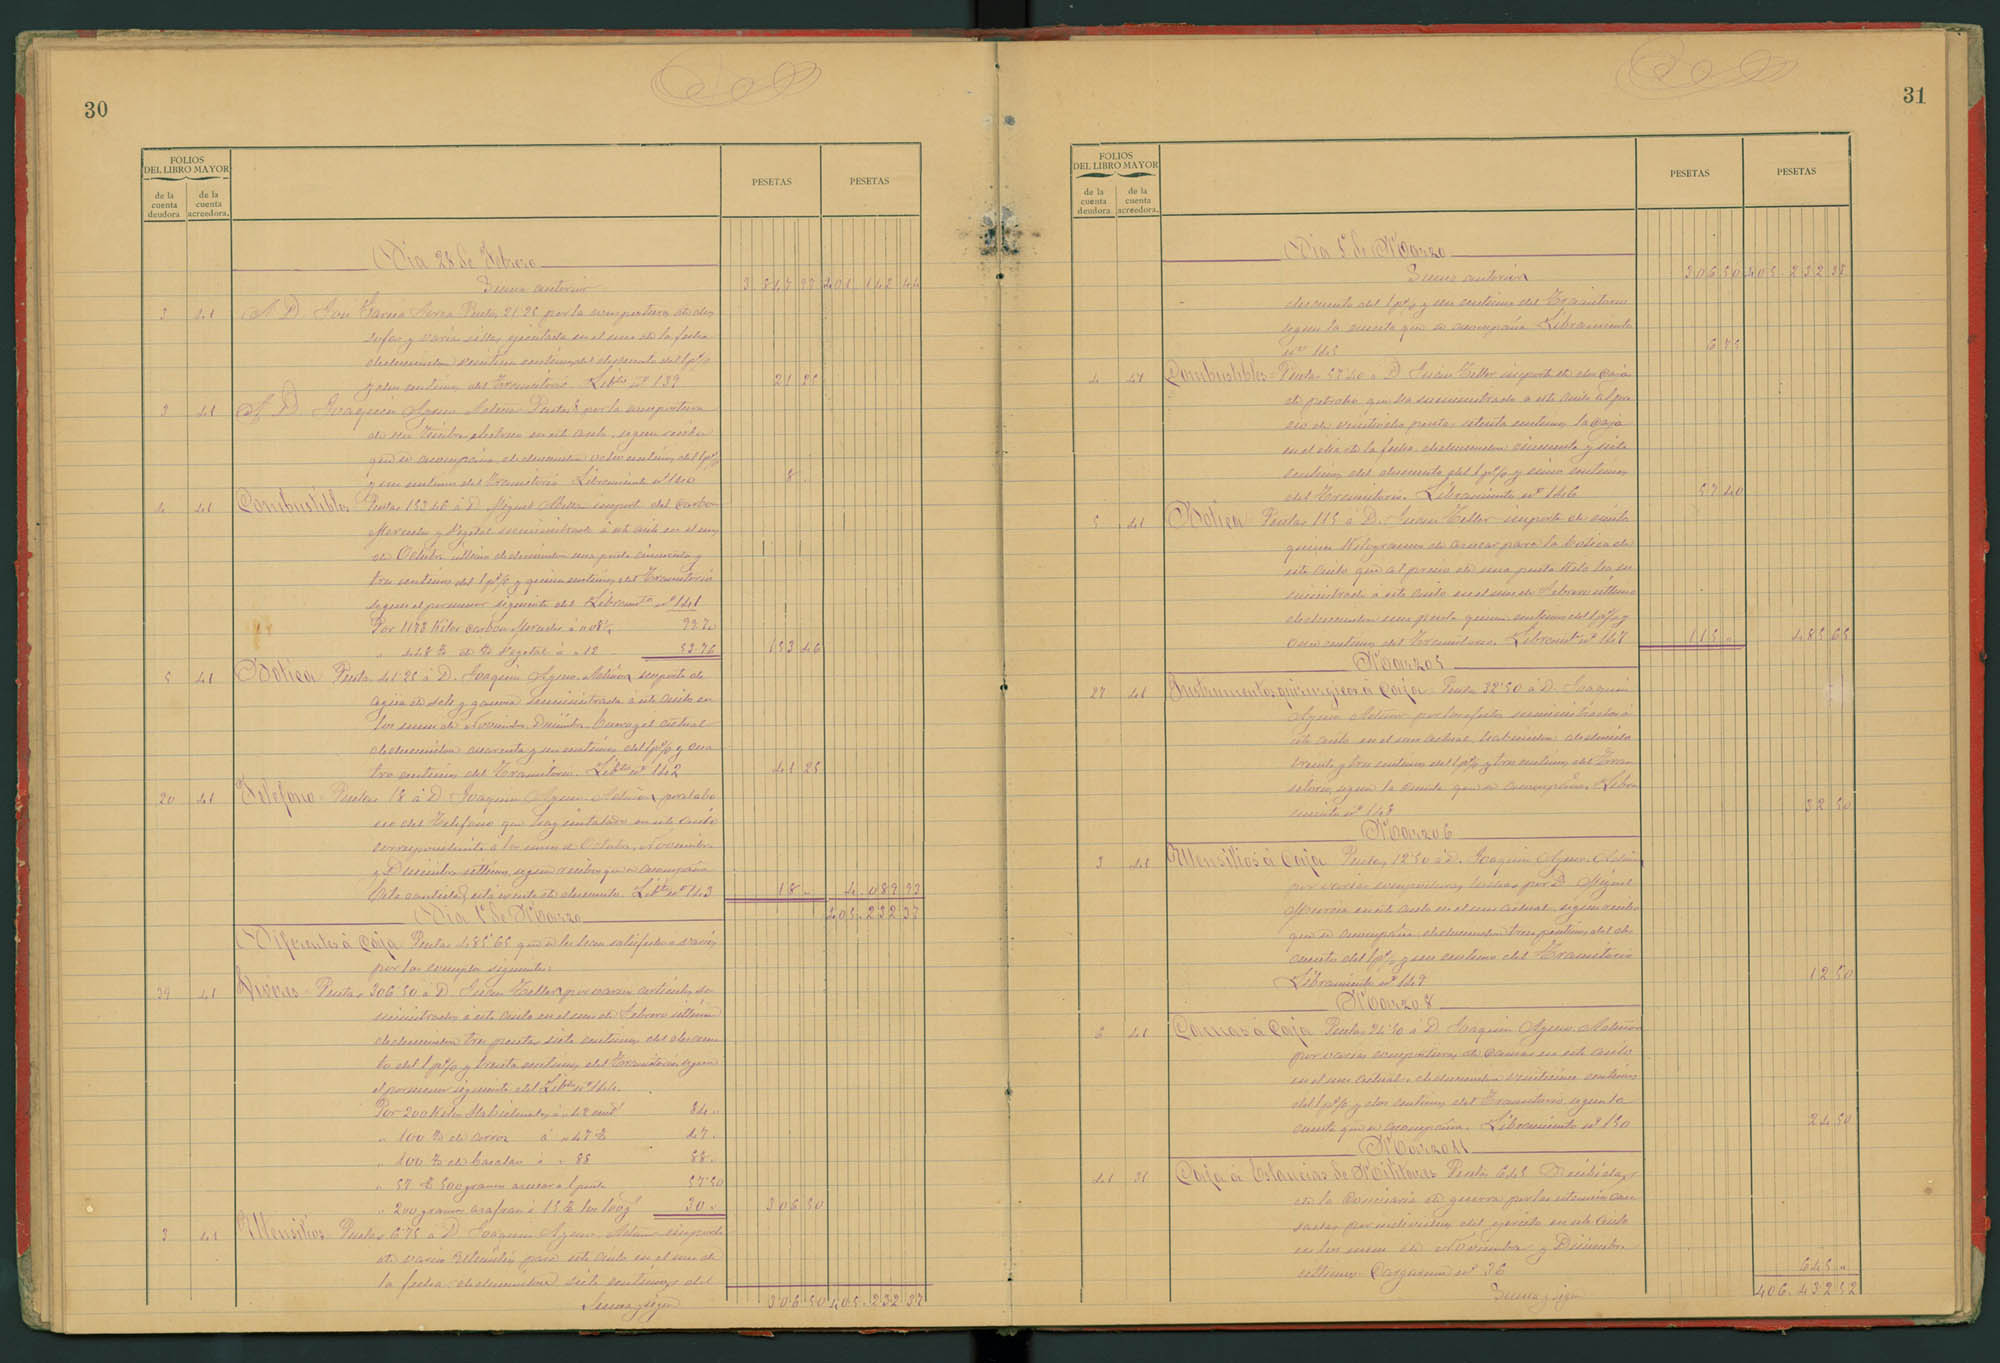 Libro diario del Hospital. Año económico 1897-1898.